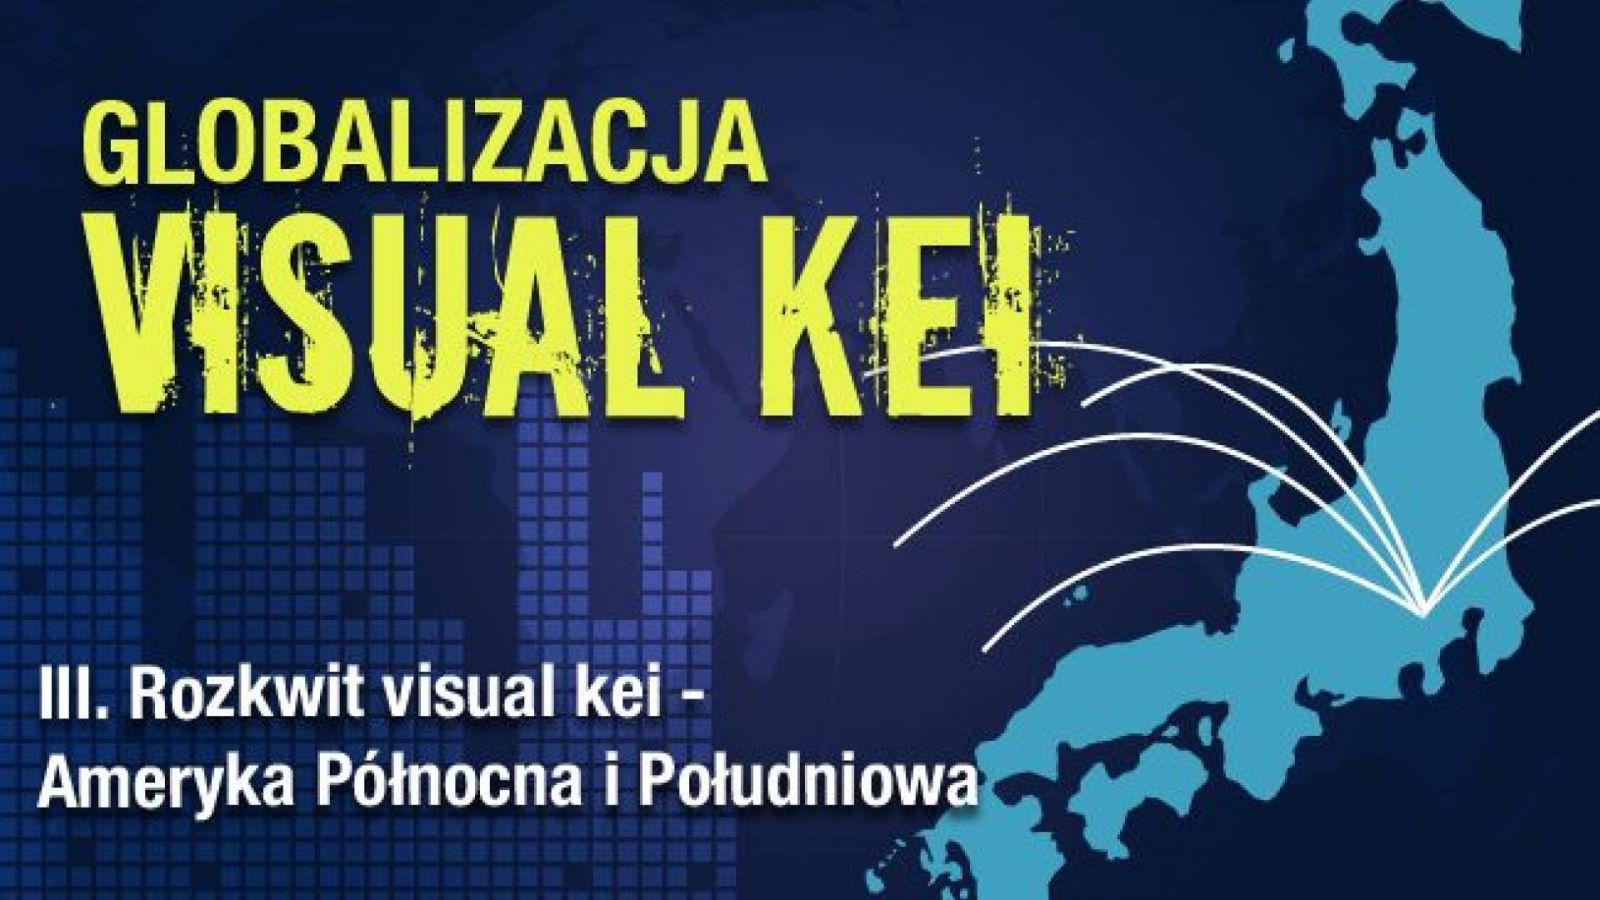 Globalizacja visual kei: Rozkwit visual kei - Ameryka Północna i Południowa © Lydia Michalitsianos